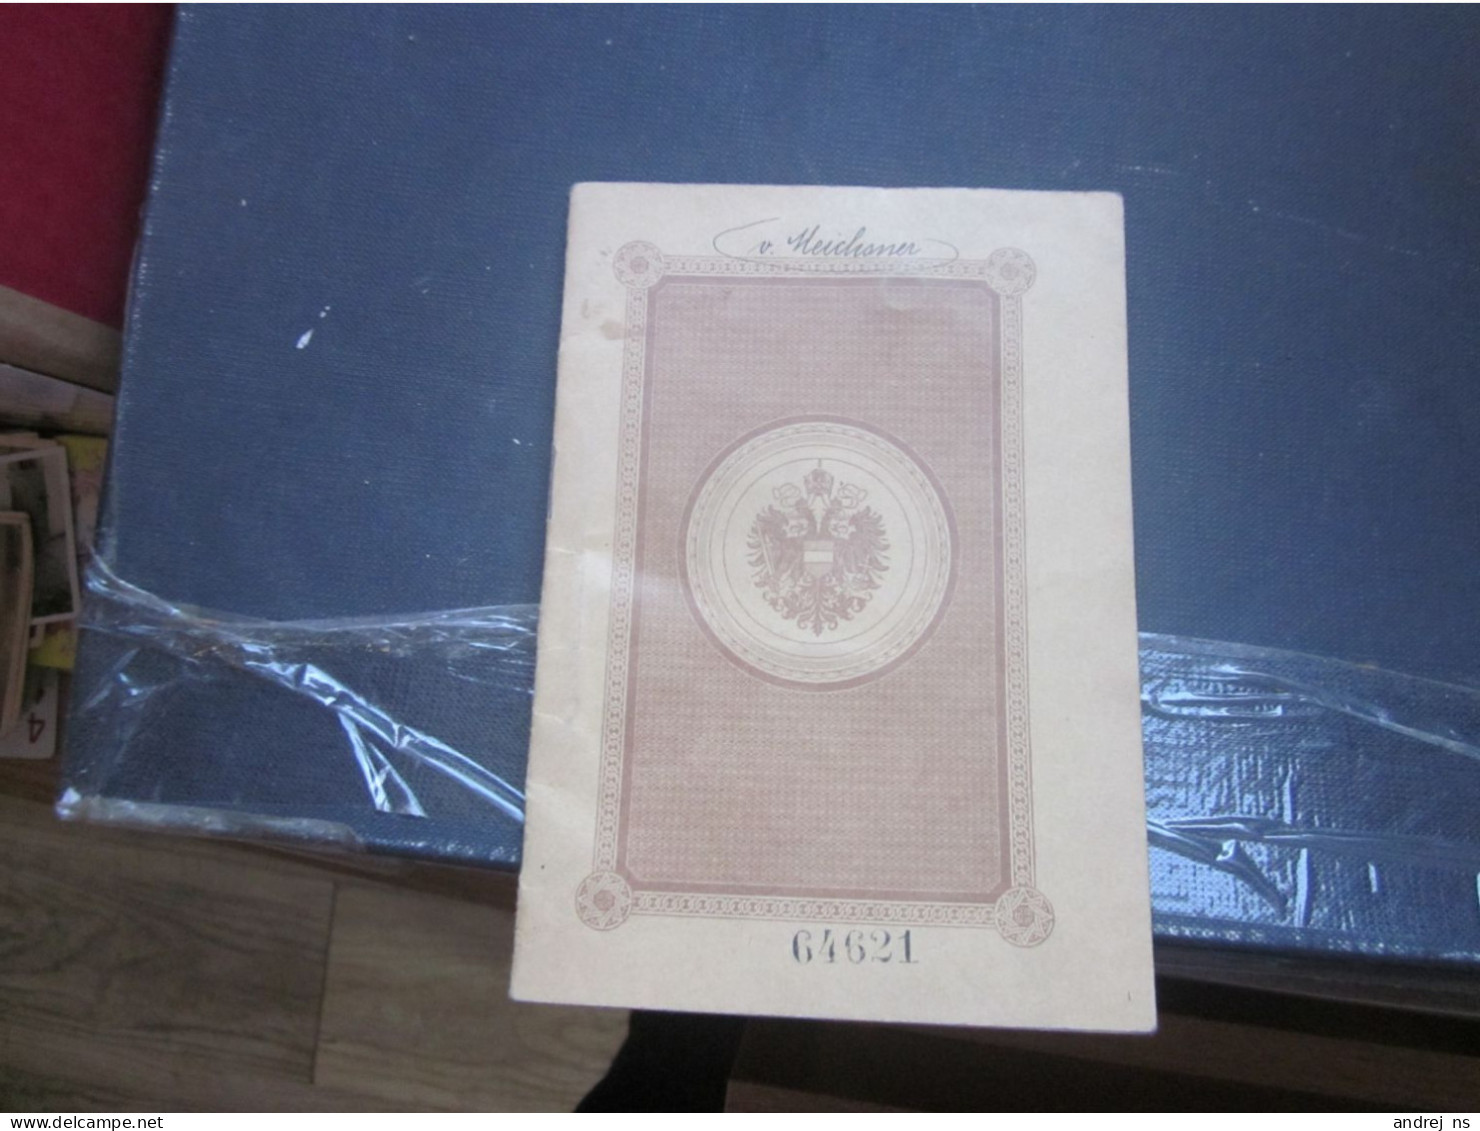 Austria Hungary Passport  Majestat Karl Wien 1917 Geburtsort Spalato Split NELLA MEICHSNER VON Meichsenau RRR EXTRA - Historische Dokumente